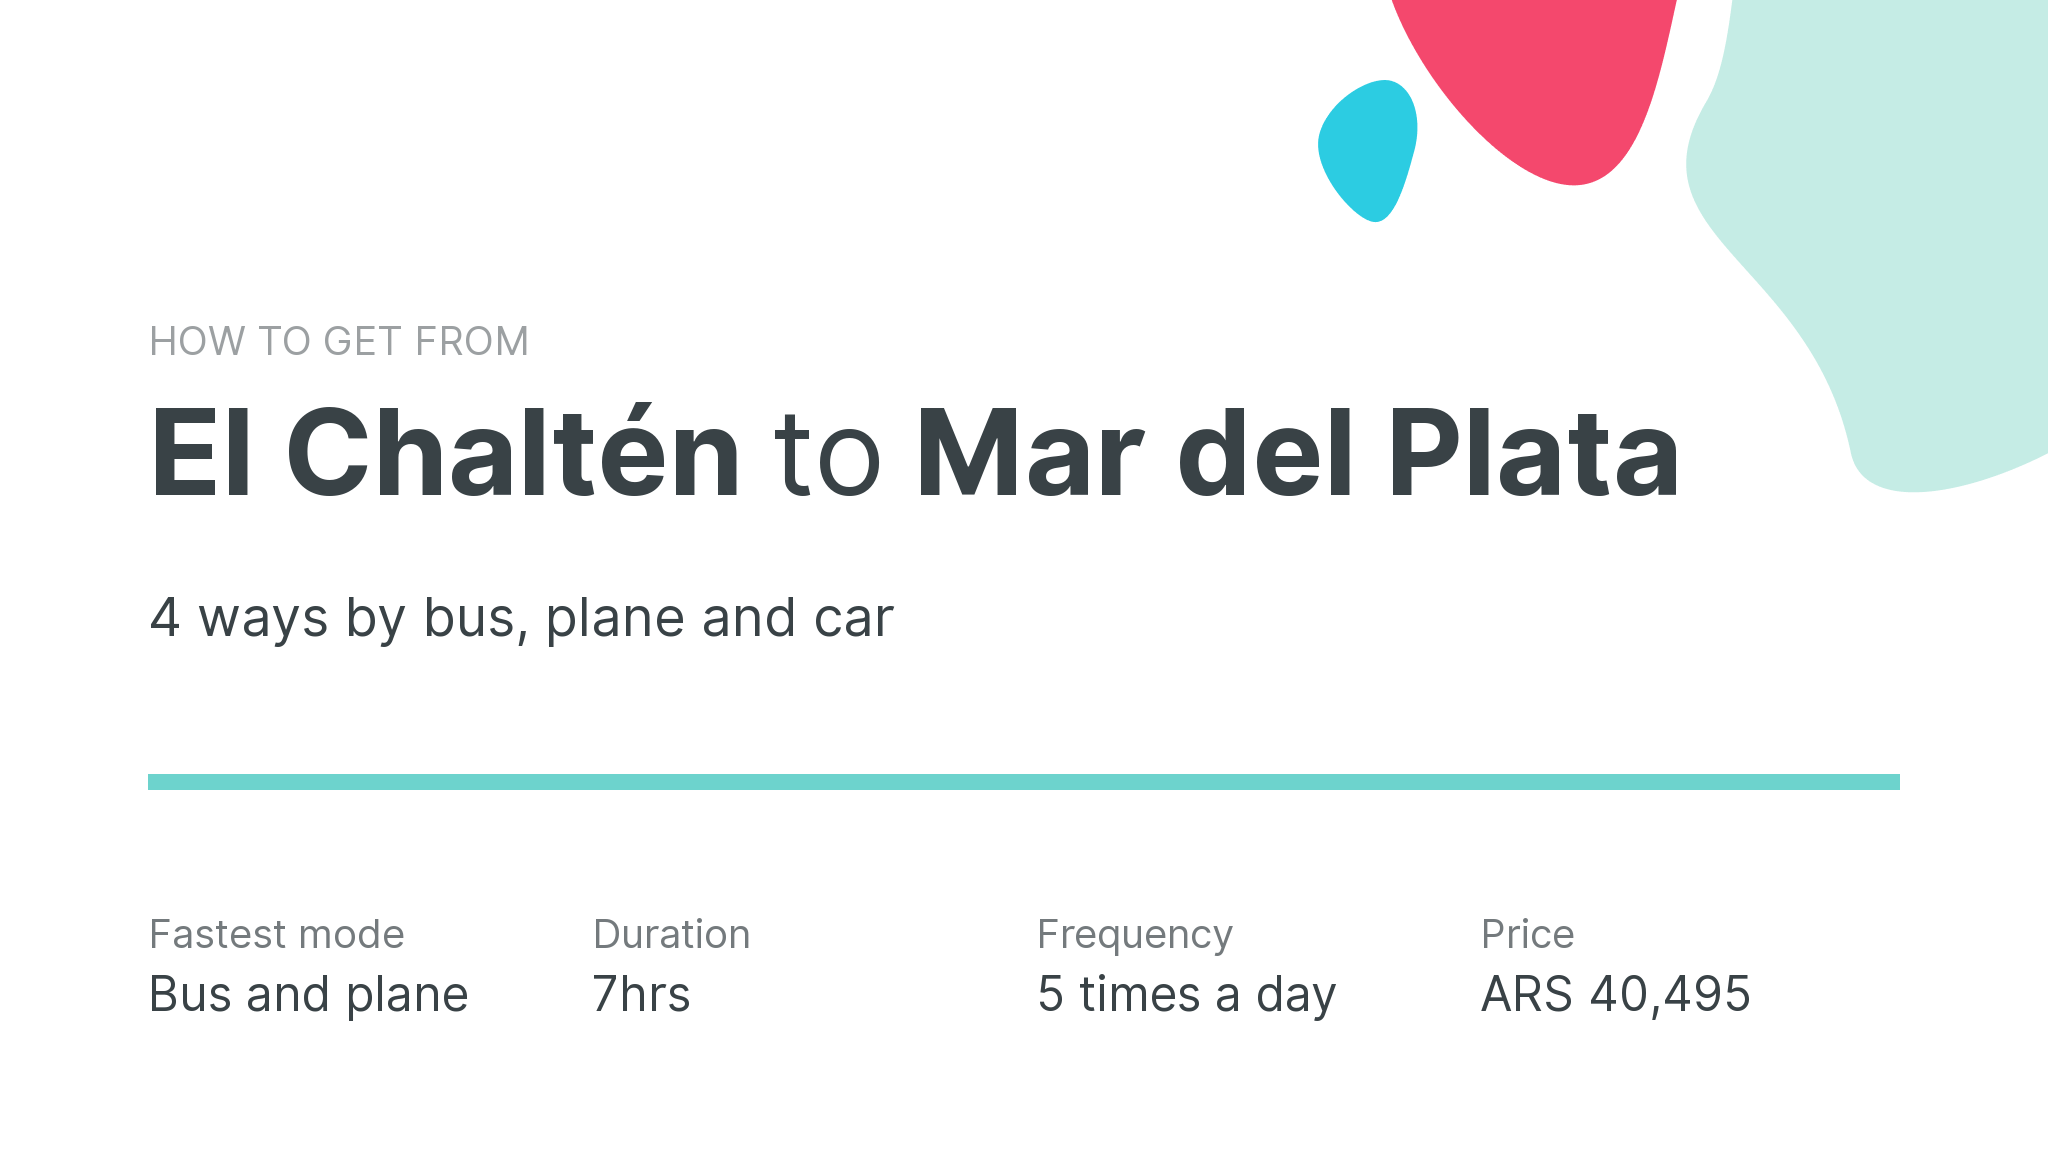 How do I get from El Chaltén to Mar del Plata